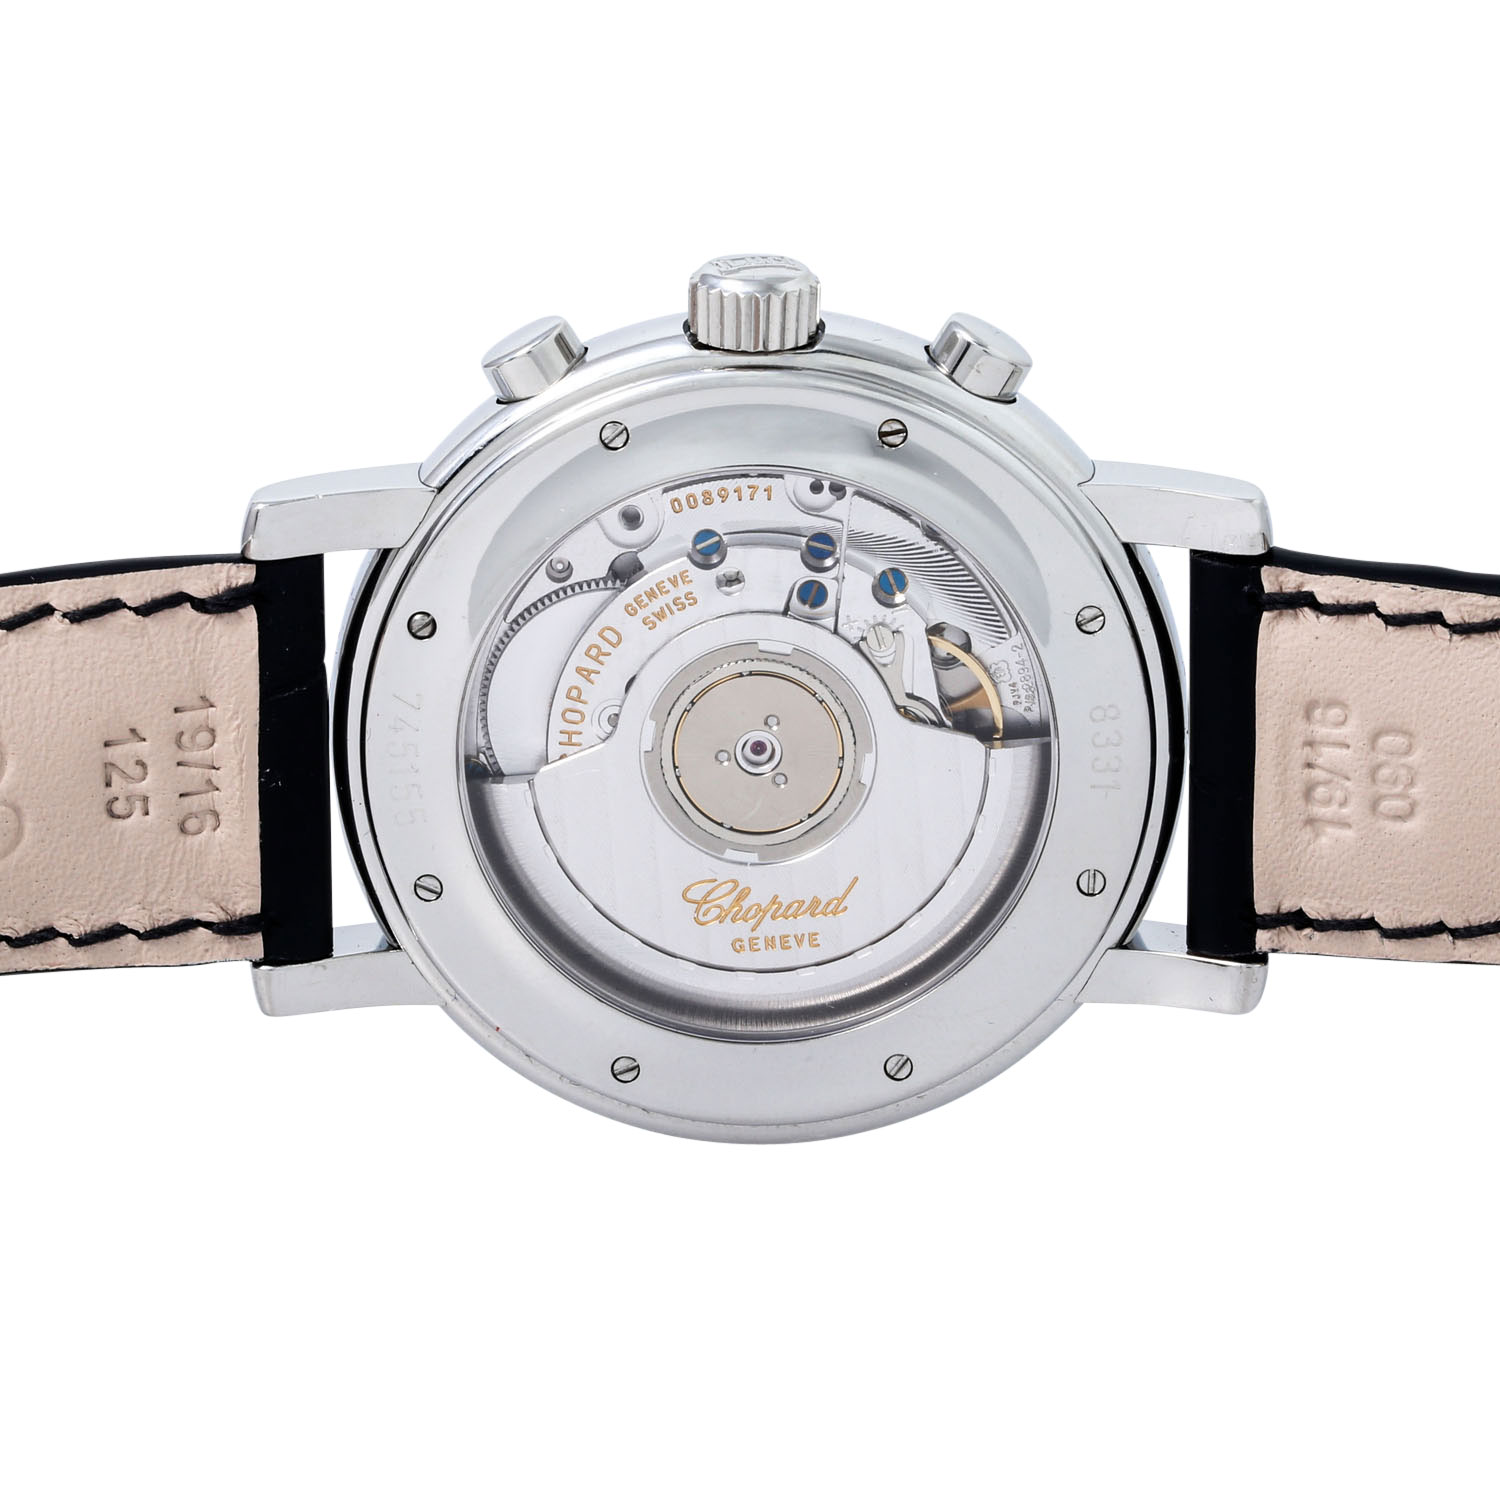 CHOPARD Mille Miglia Chronograph, Ref. 16/8331-3001. Armbanduhr. Ca. 2000er Jahre. - Bild 2 aus 9